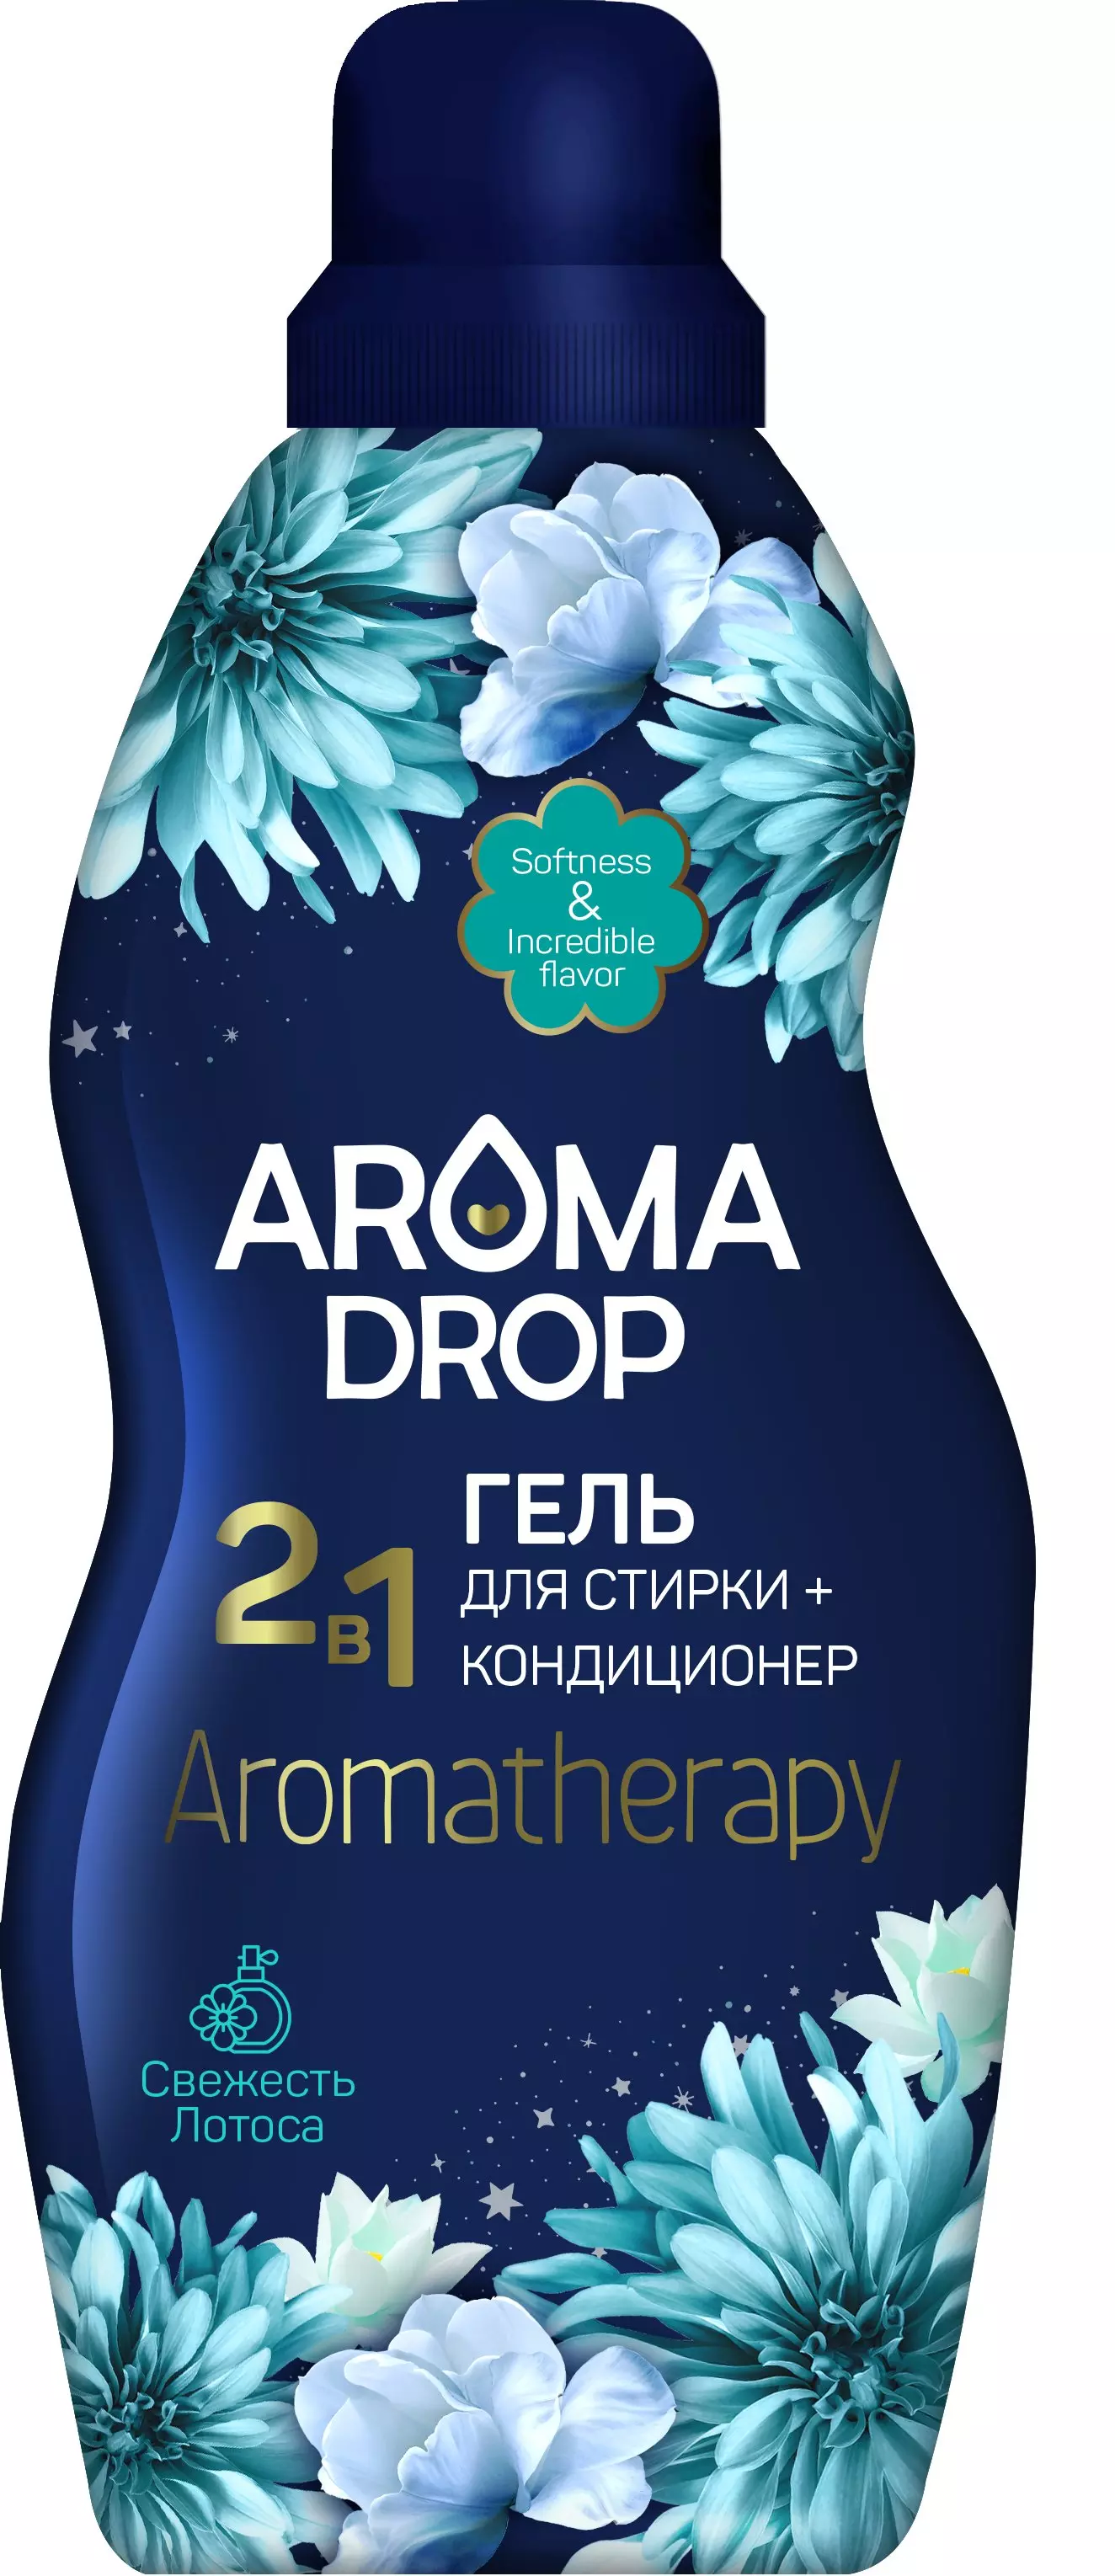 Гель для стирки Aroma Drop Aromatherapy 2 в 1 Свежесть лотоса, 1 л